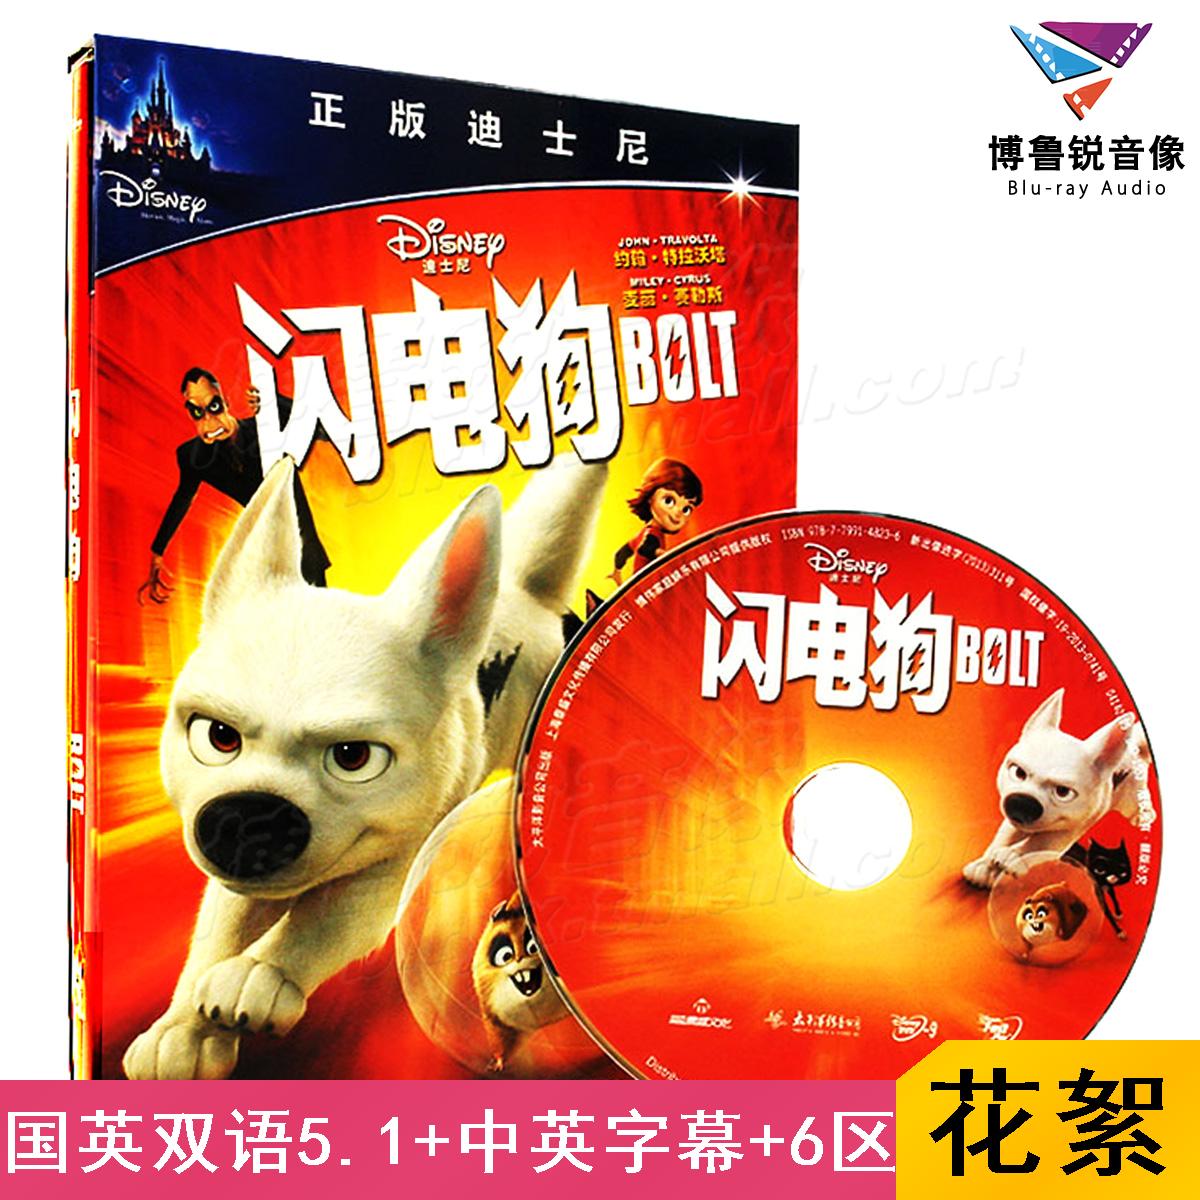 【现货】闪电狗BOLT迪士尼动画奥斯卡中英双语 泰盛高清DVD碟片